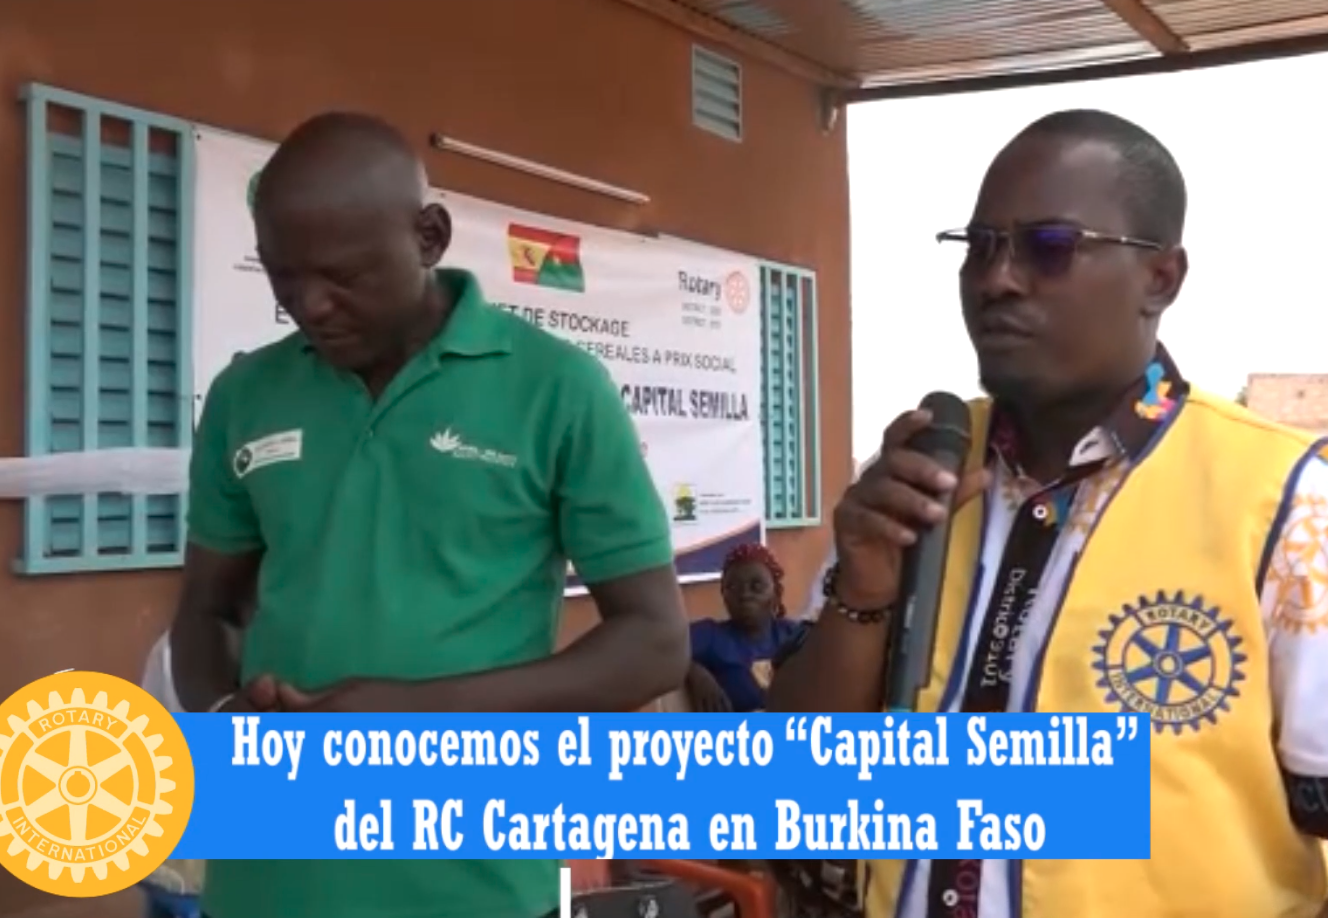 Capital semilla Rotary Cartagena en Burkina Faso